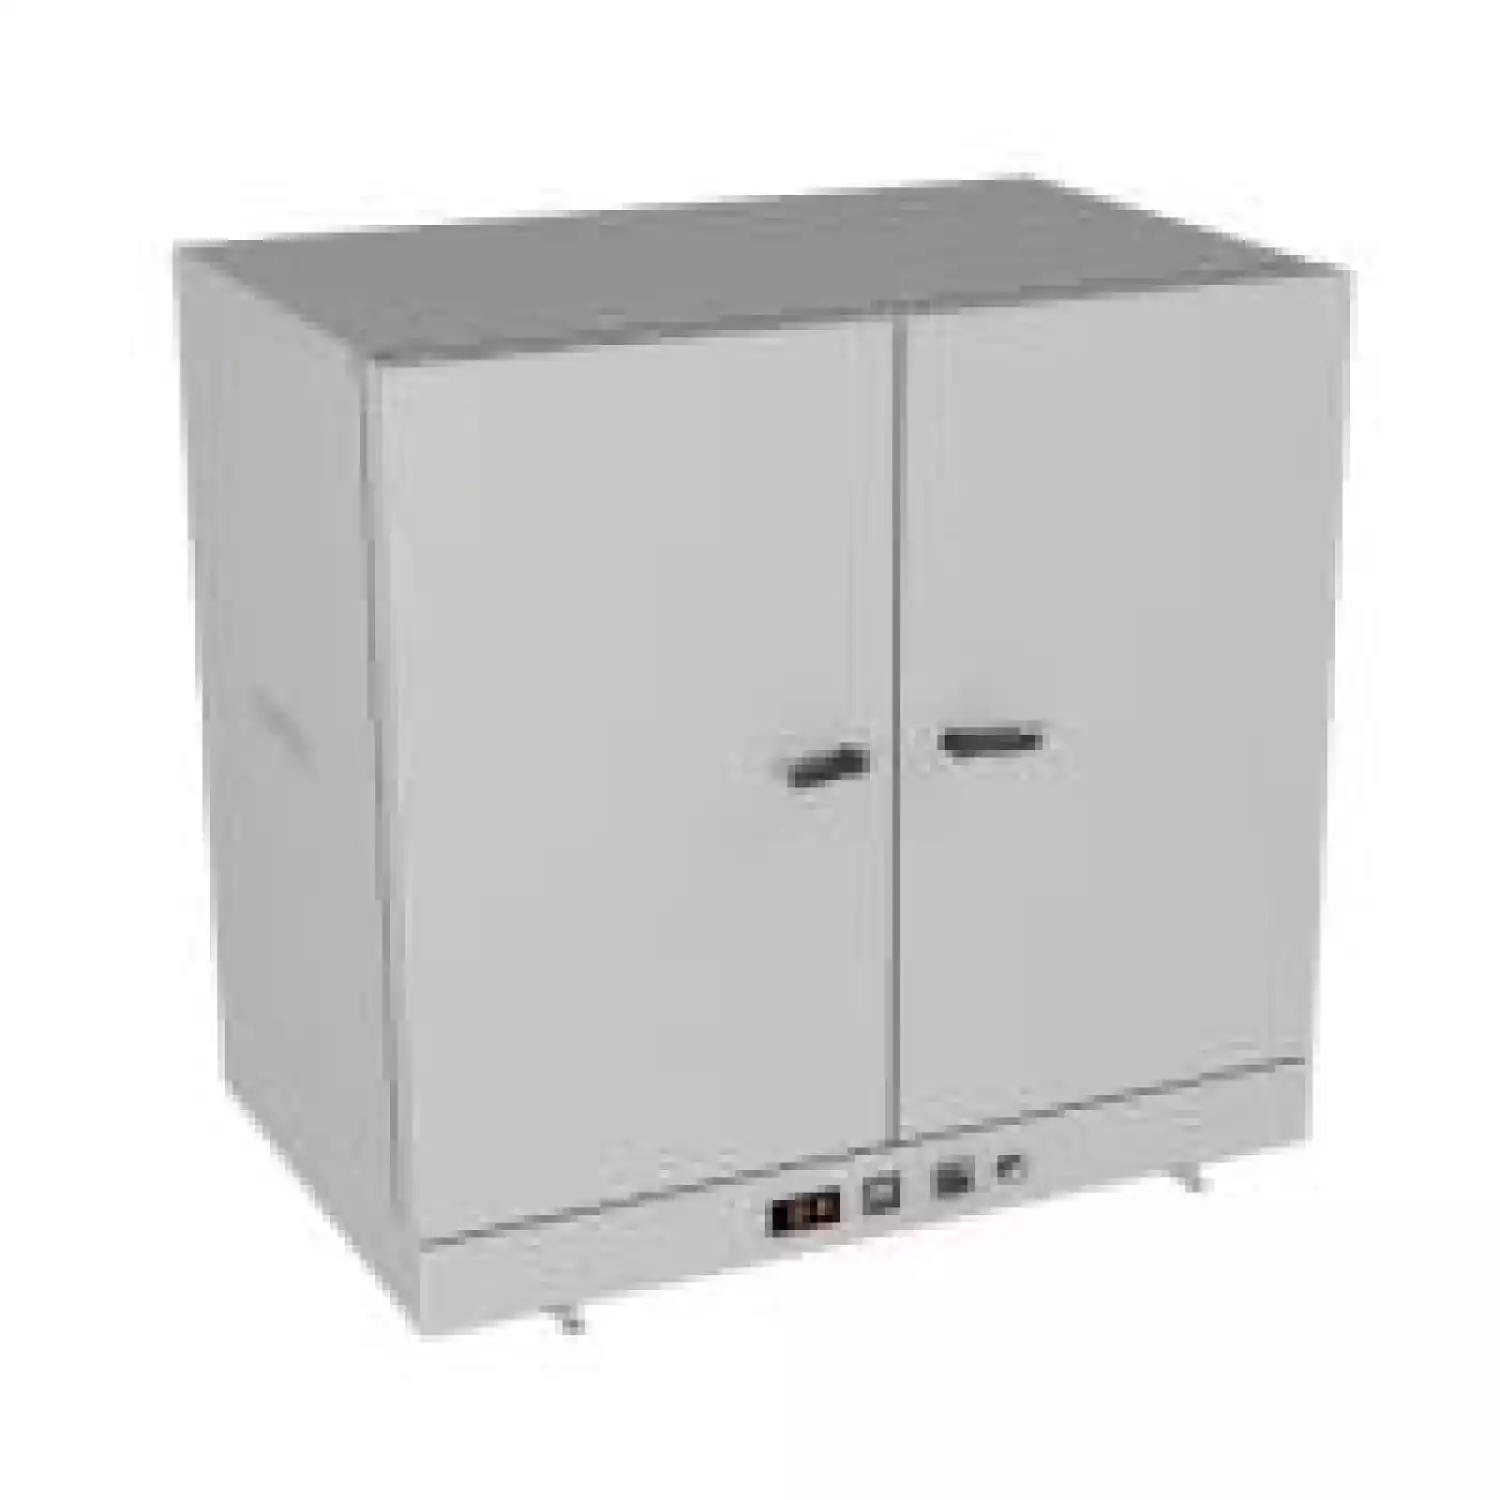 SNOL 420/300 LFNEc шкаф сушильный (420 л, нержавеющая сталь, интерфейс) - 1